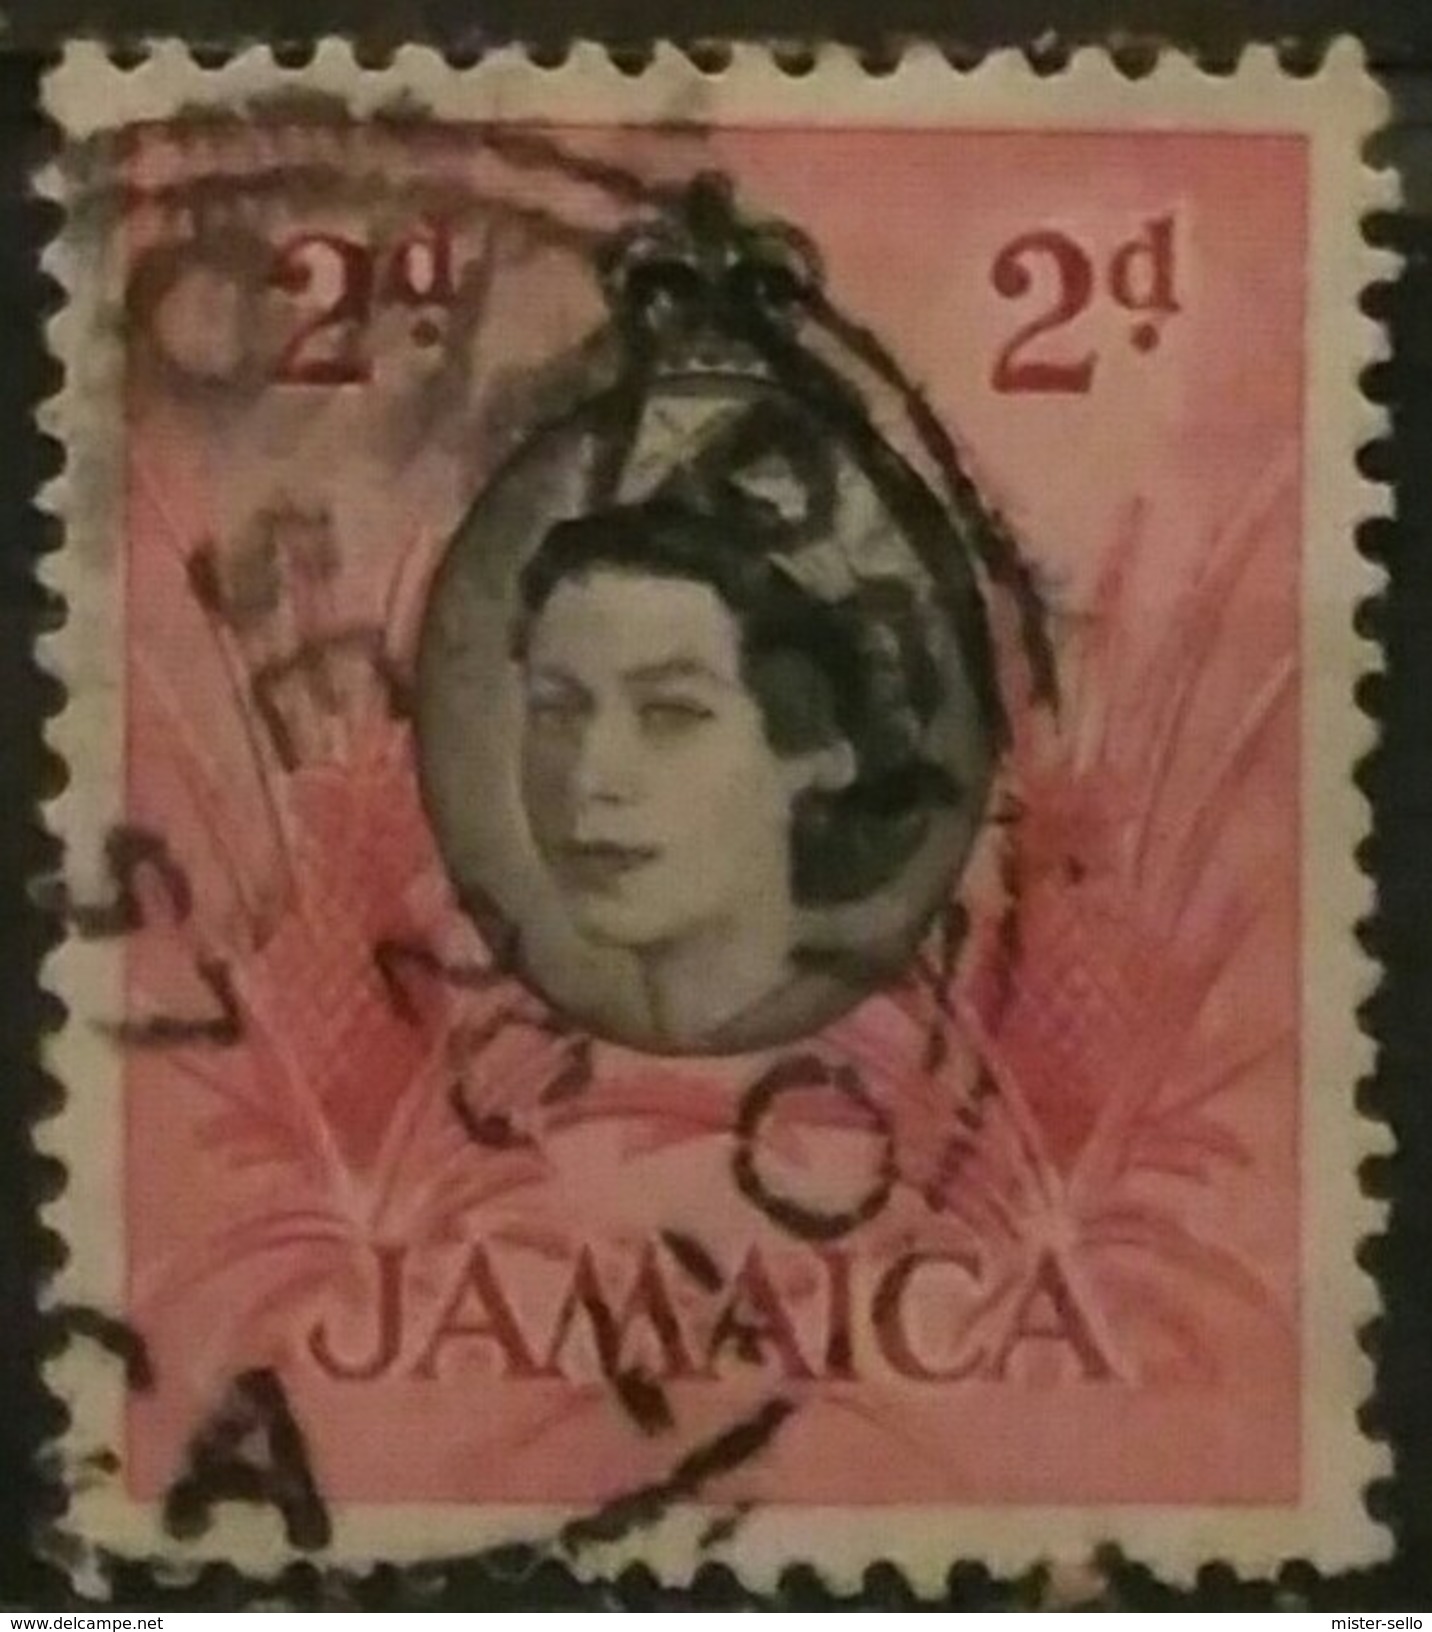 JAMAICA 1956 Local Motifs. USADO - USED. - Jamaica (1962-...)